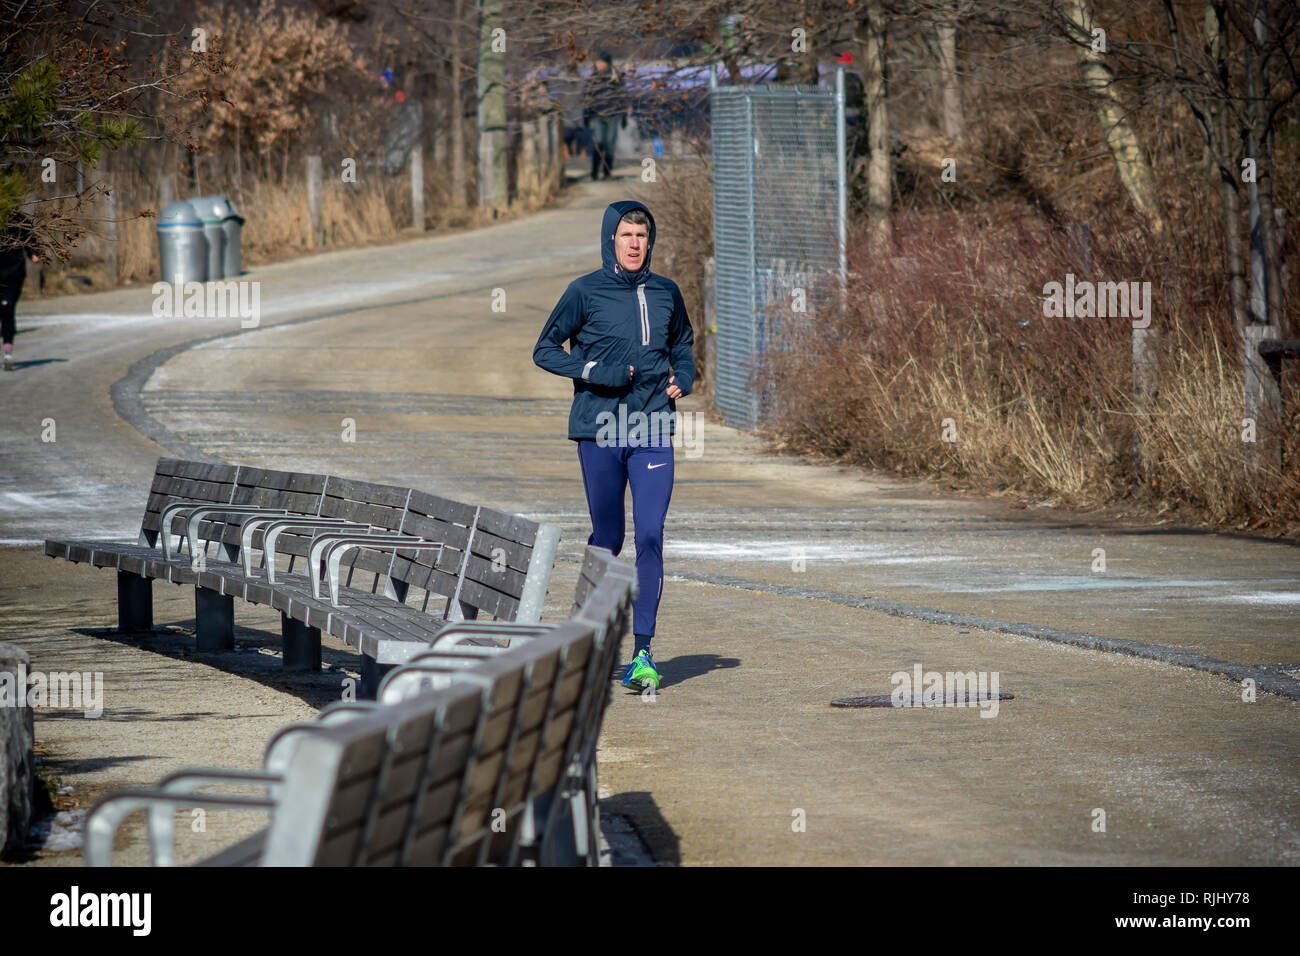 Les joggers intrépides braver le froid à Brooklyn Bridge Park à New York le Samedi, Février 2, 2019. (© Richard n. Levine) Banque D'Images